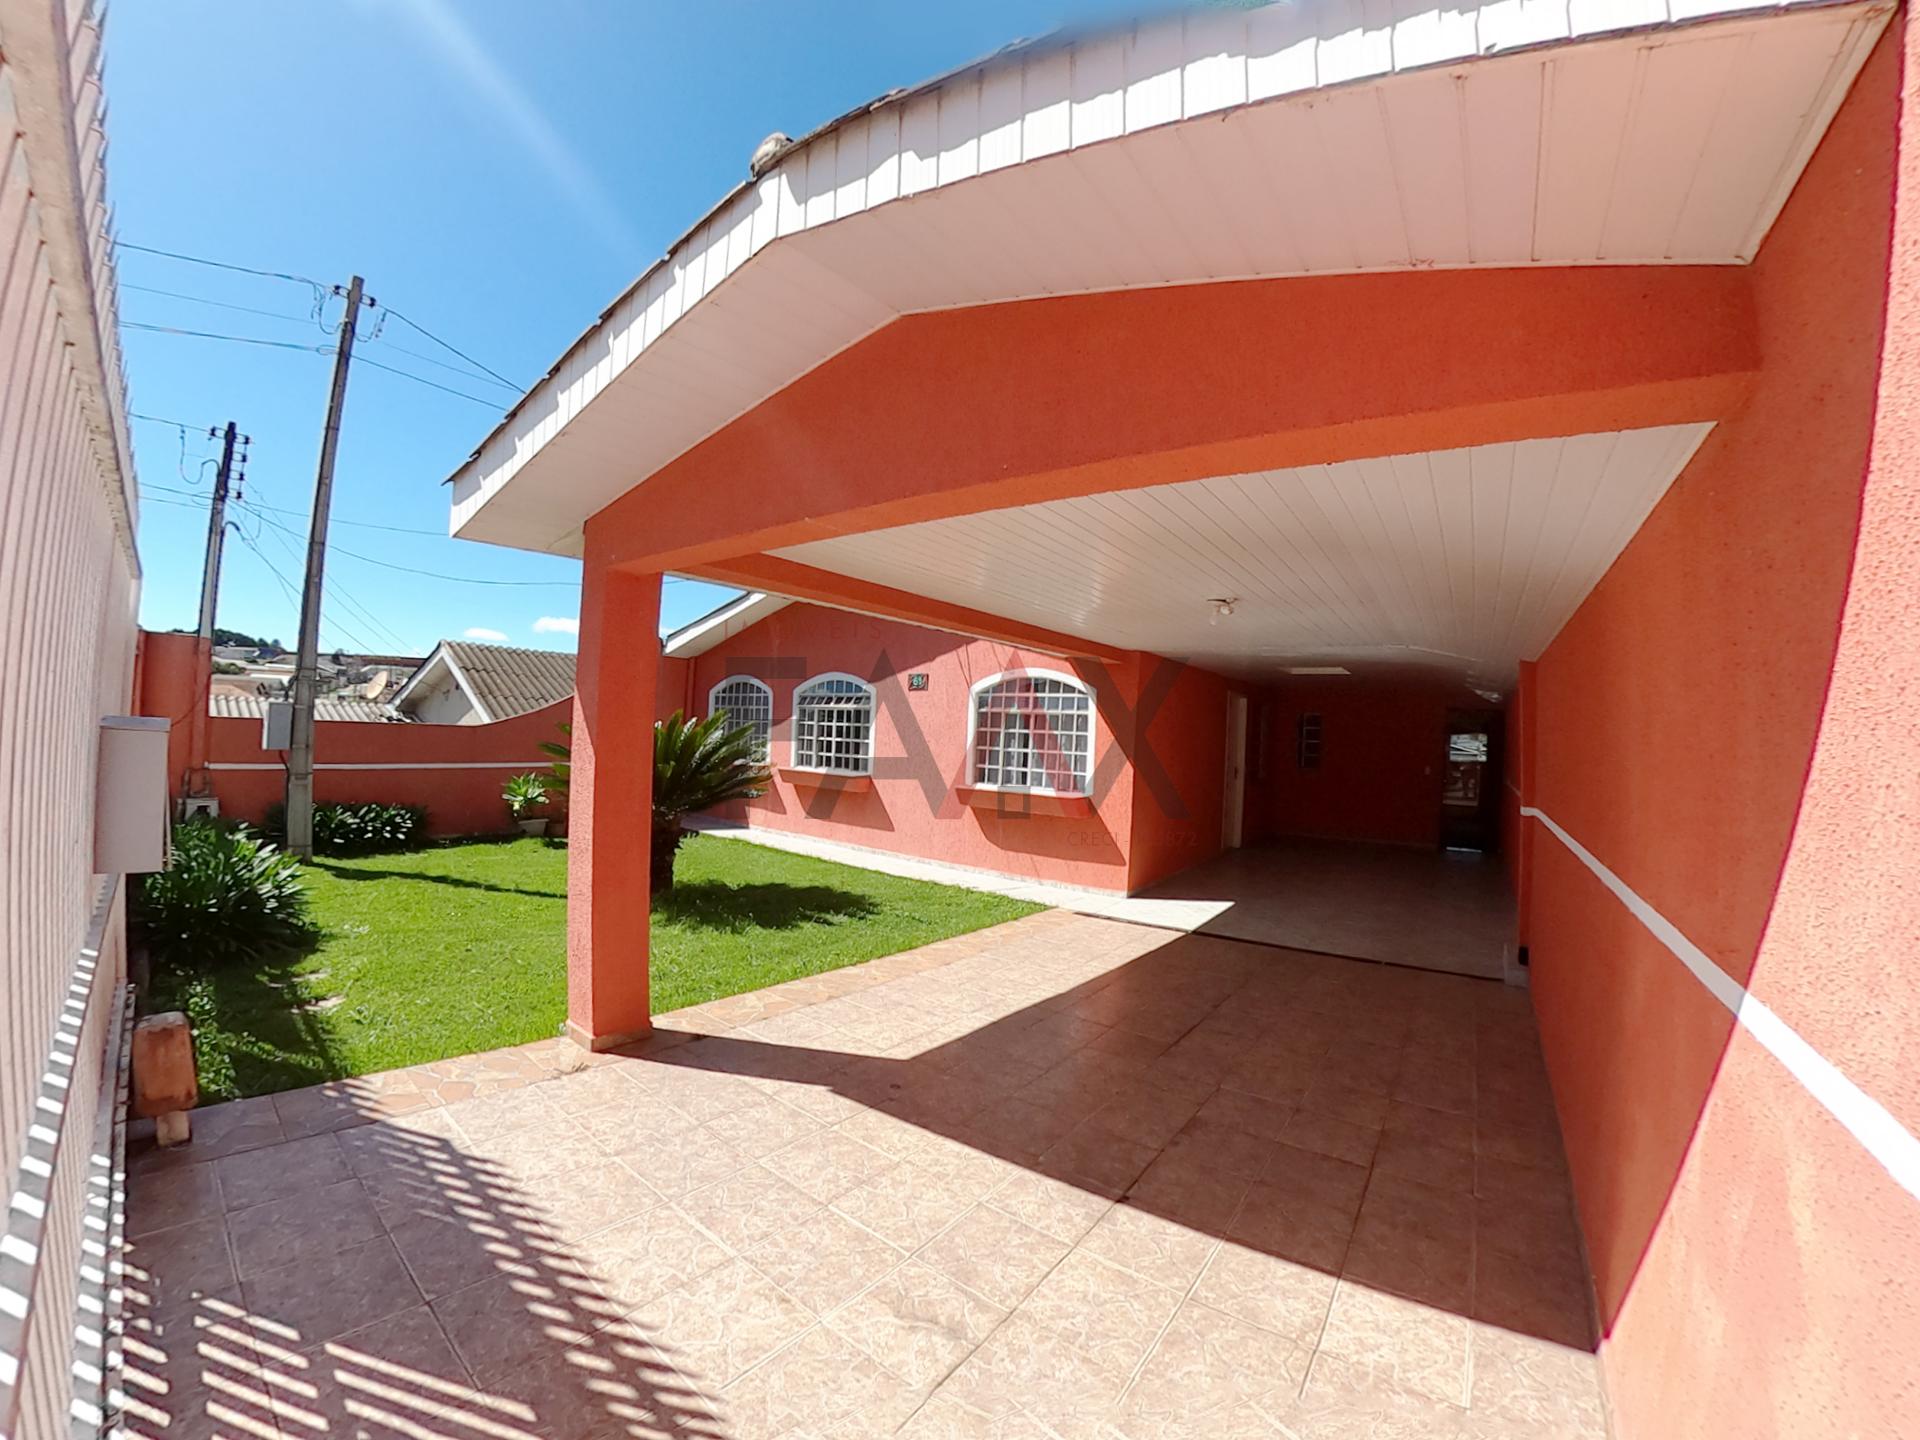 Casa com 5 dormitórios para venda,110.00m , TANCREDO NEVES, GUARAPUAVA - PR